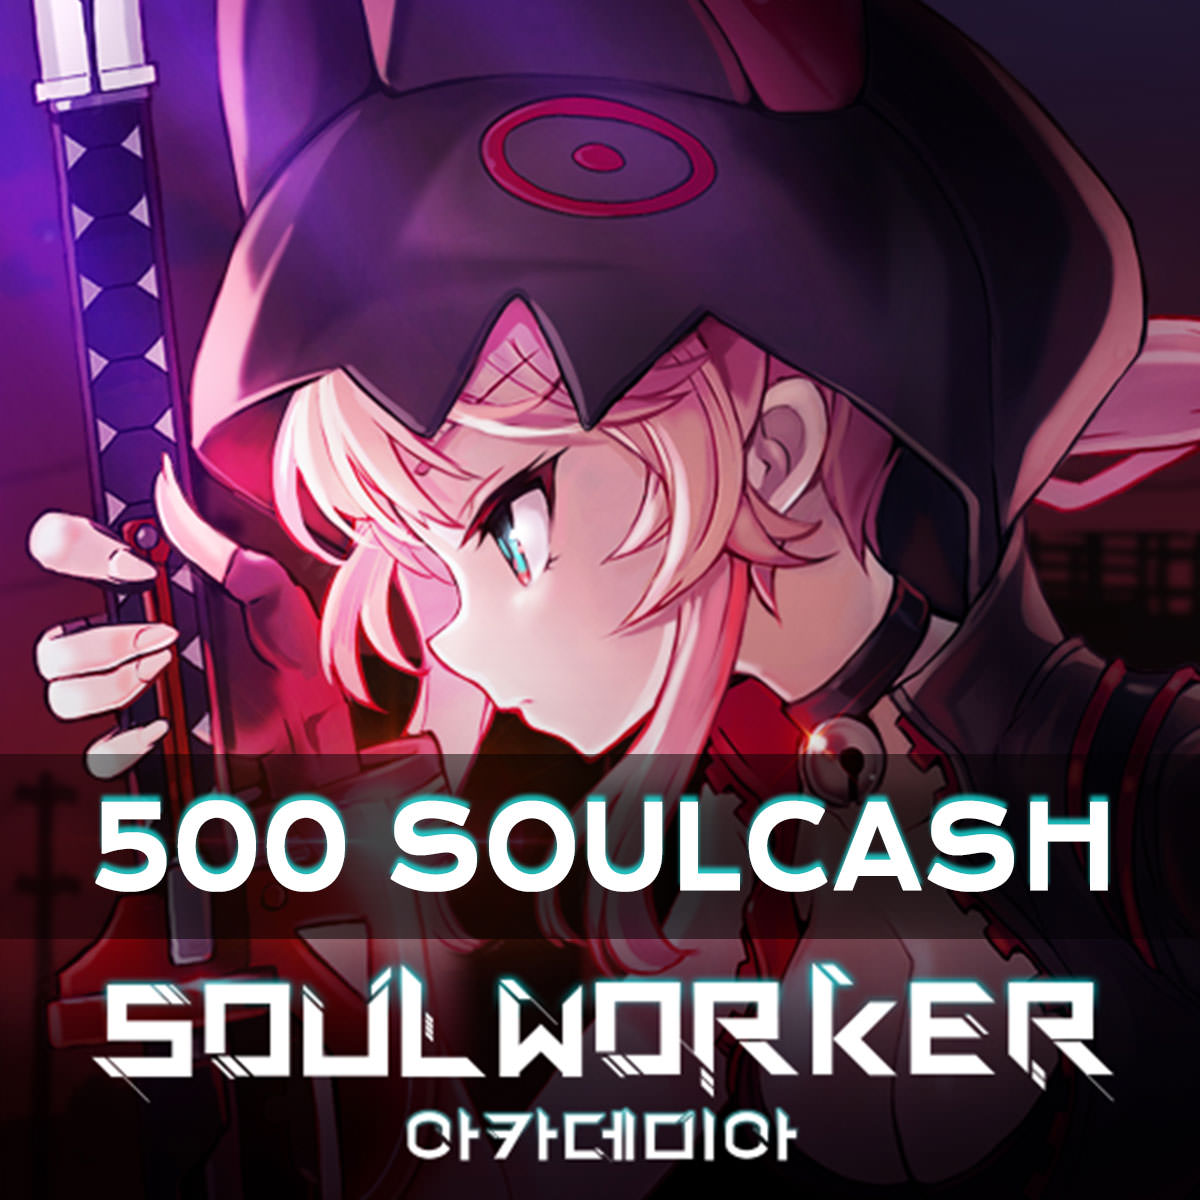 Soulworker 500 SoulCash